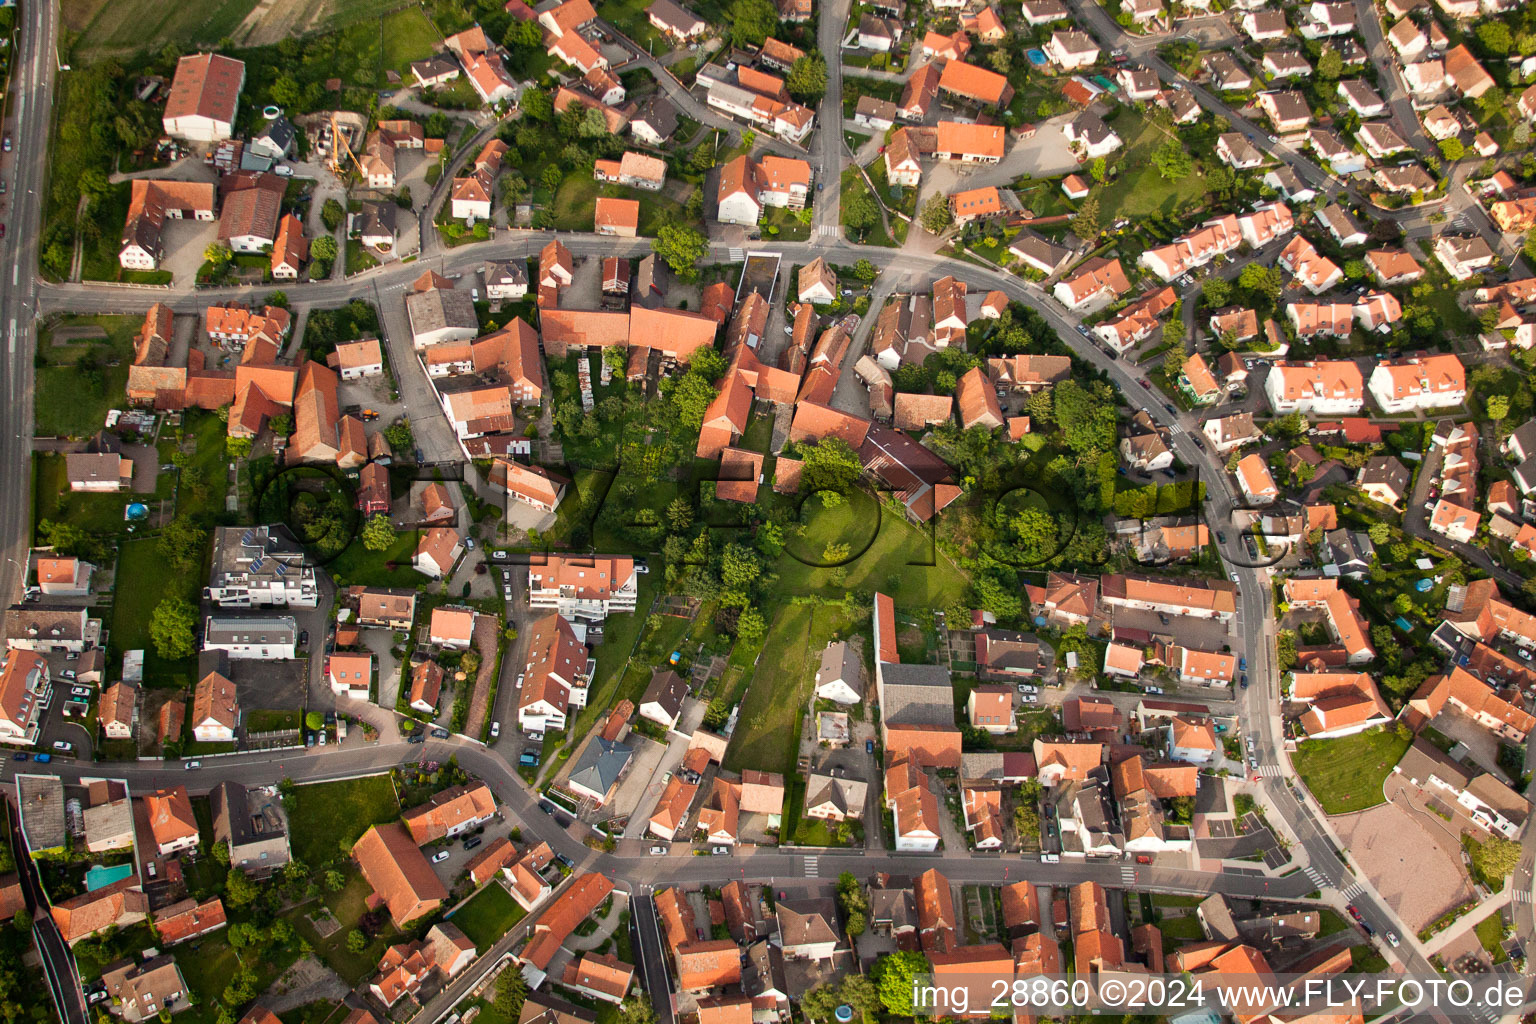 Vue aérienne de Vue sur le village à Kilstett dans le département Bas Rhin, France